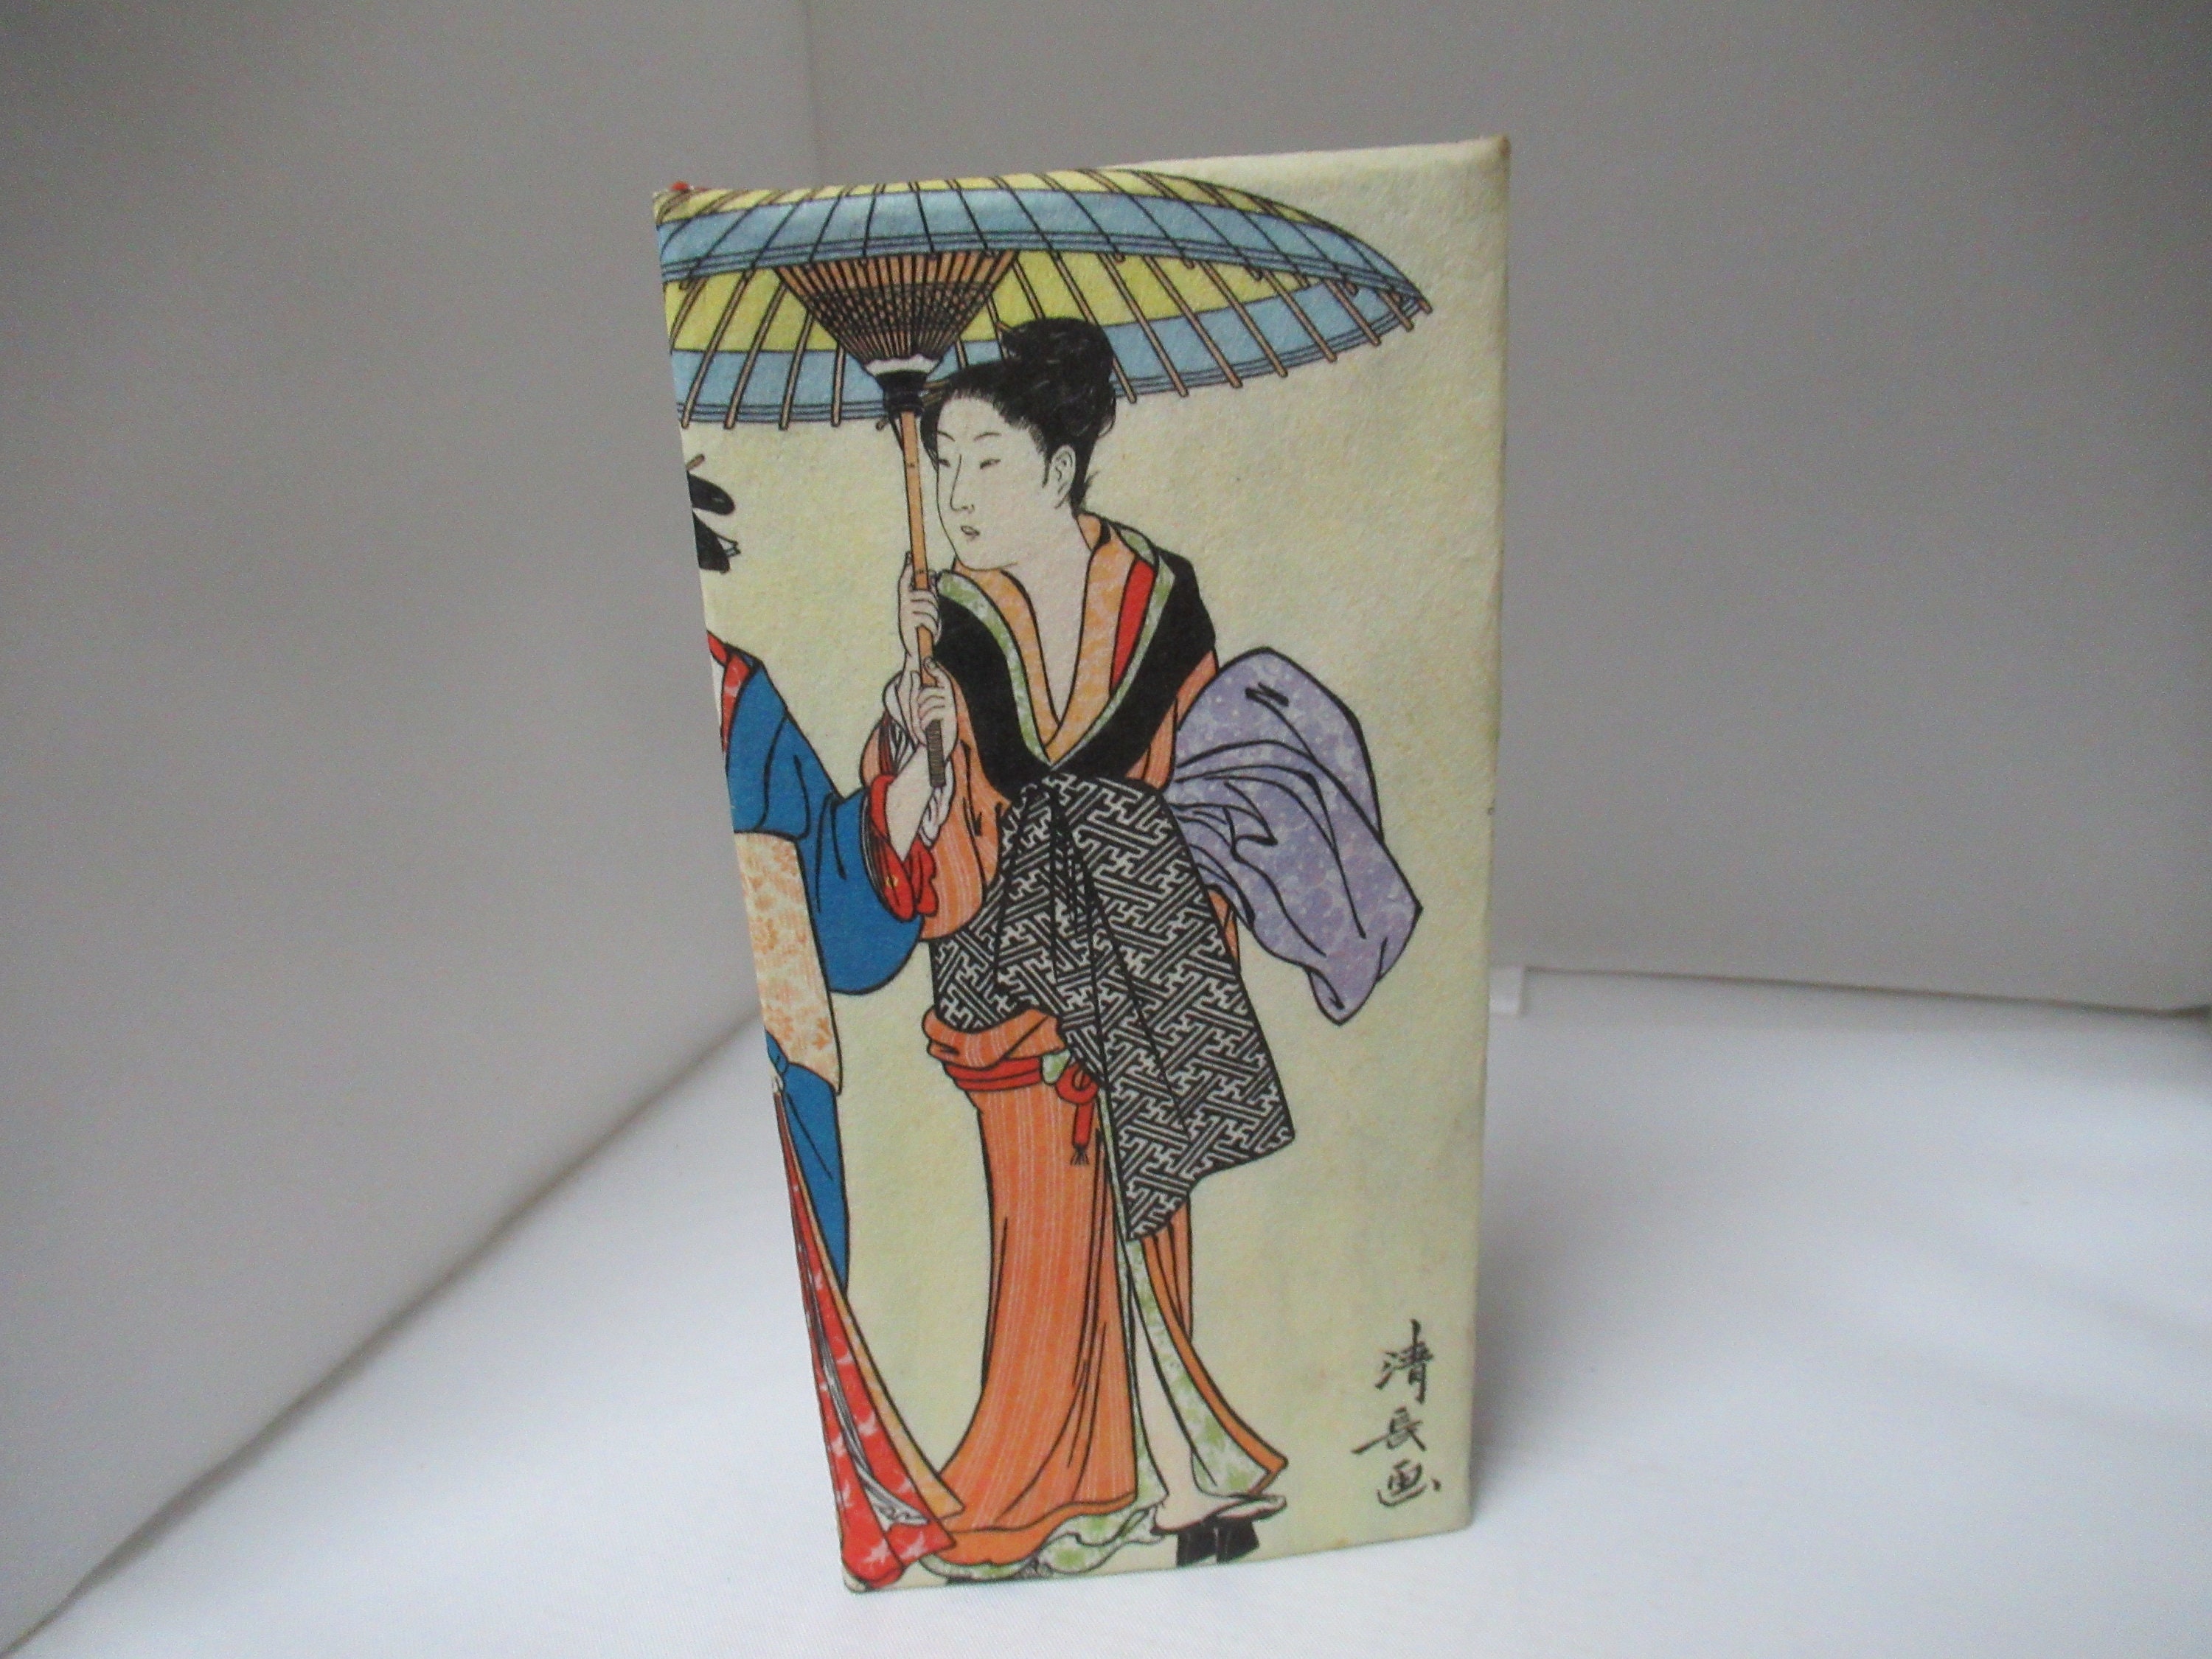 Japanese Kimono Name Card Holder - Vintage Fabric, Upcycled, RFID